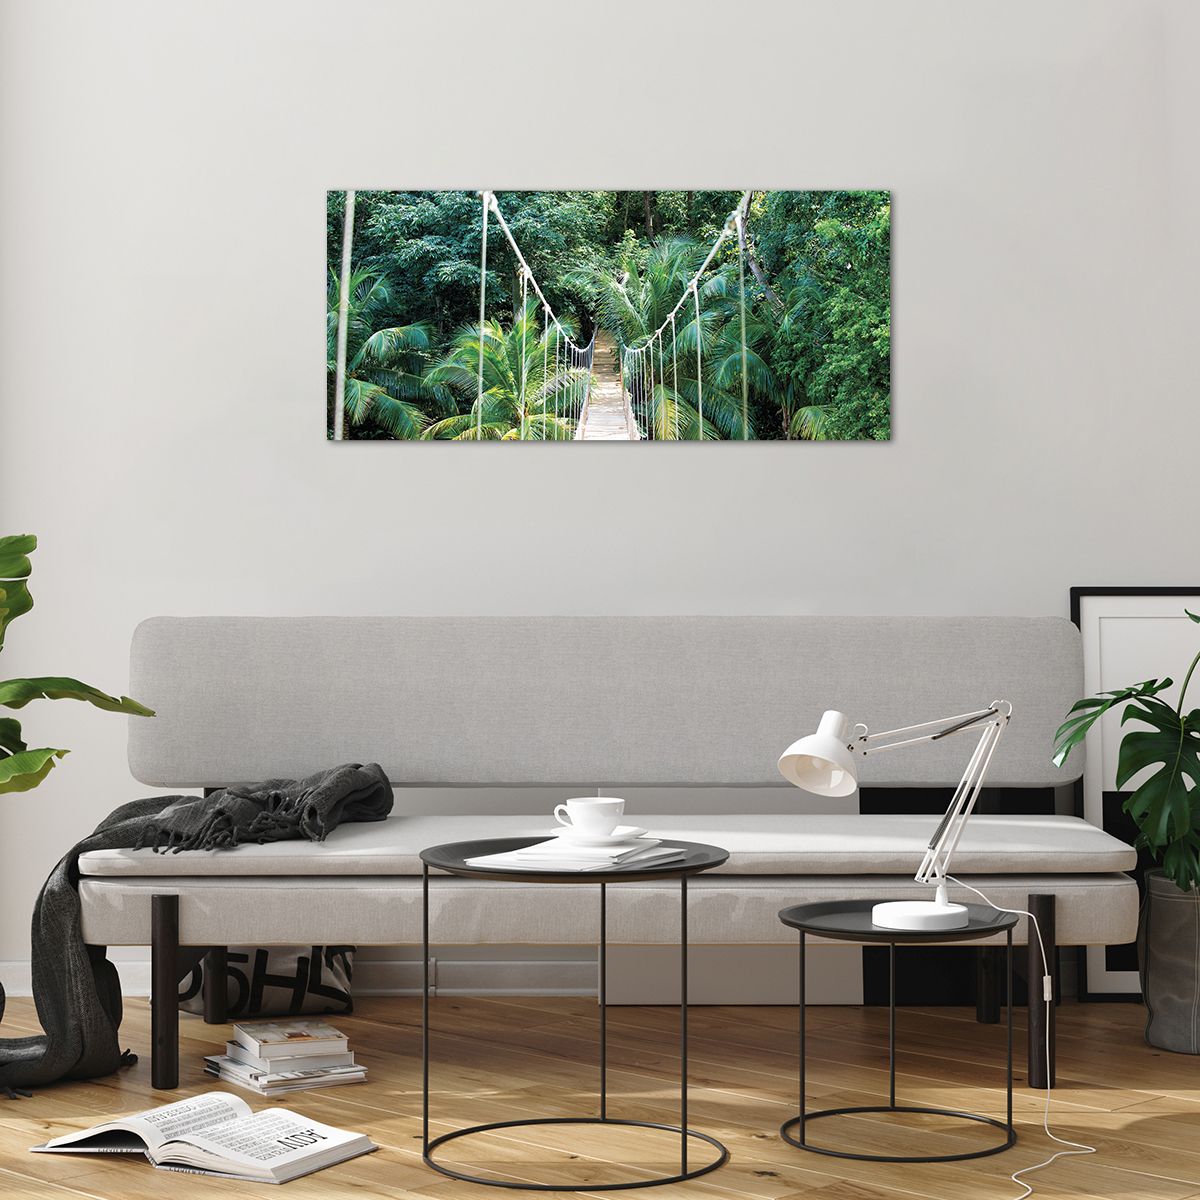 Glass picture  Landscape, Glass picture  Jungle, Glass picture  Honduras, Glass picture  Hanging Bridge, Glass picture  Nature